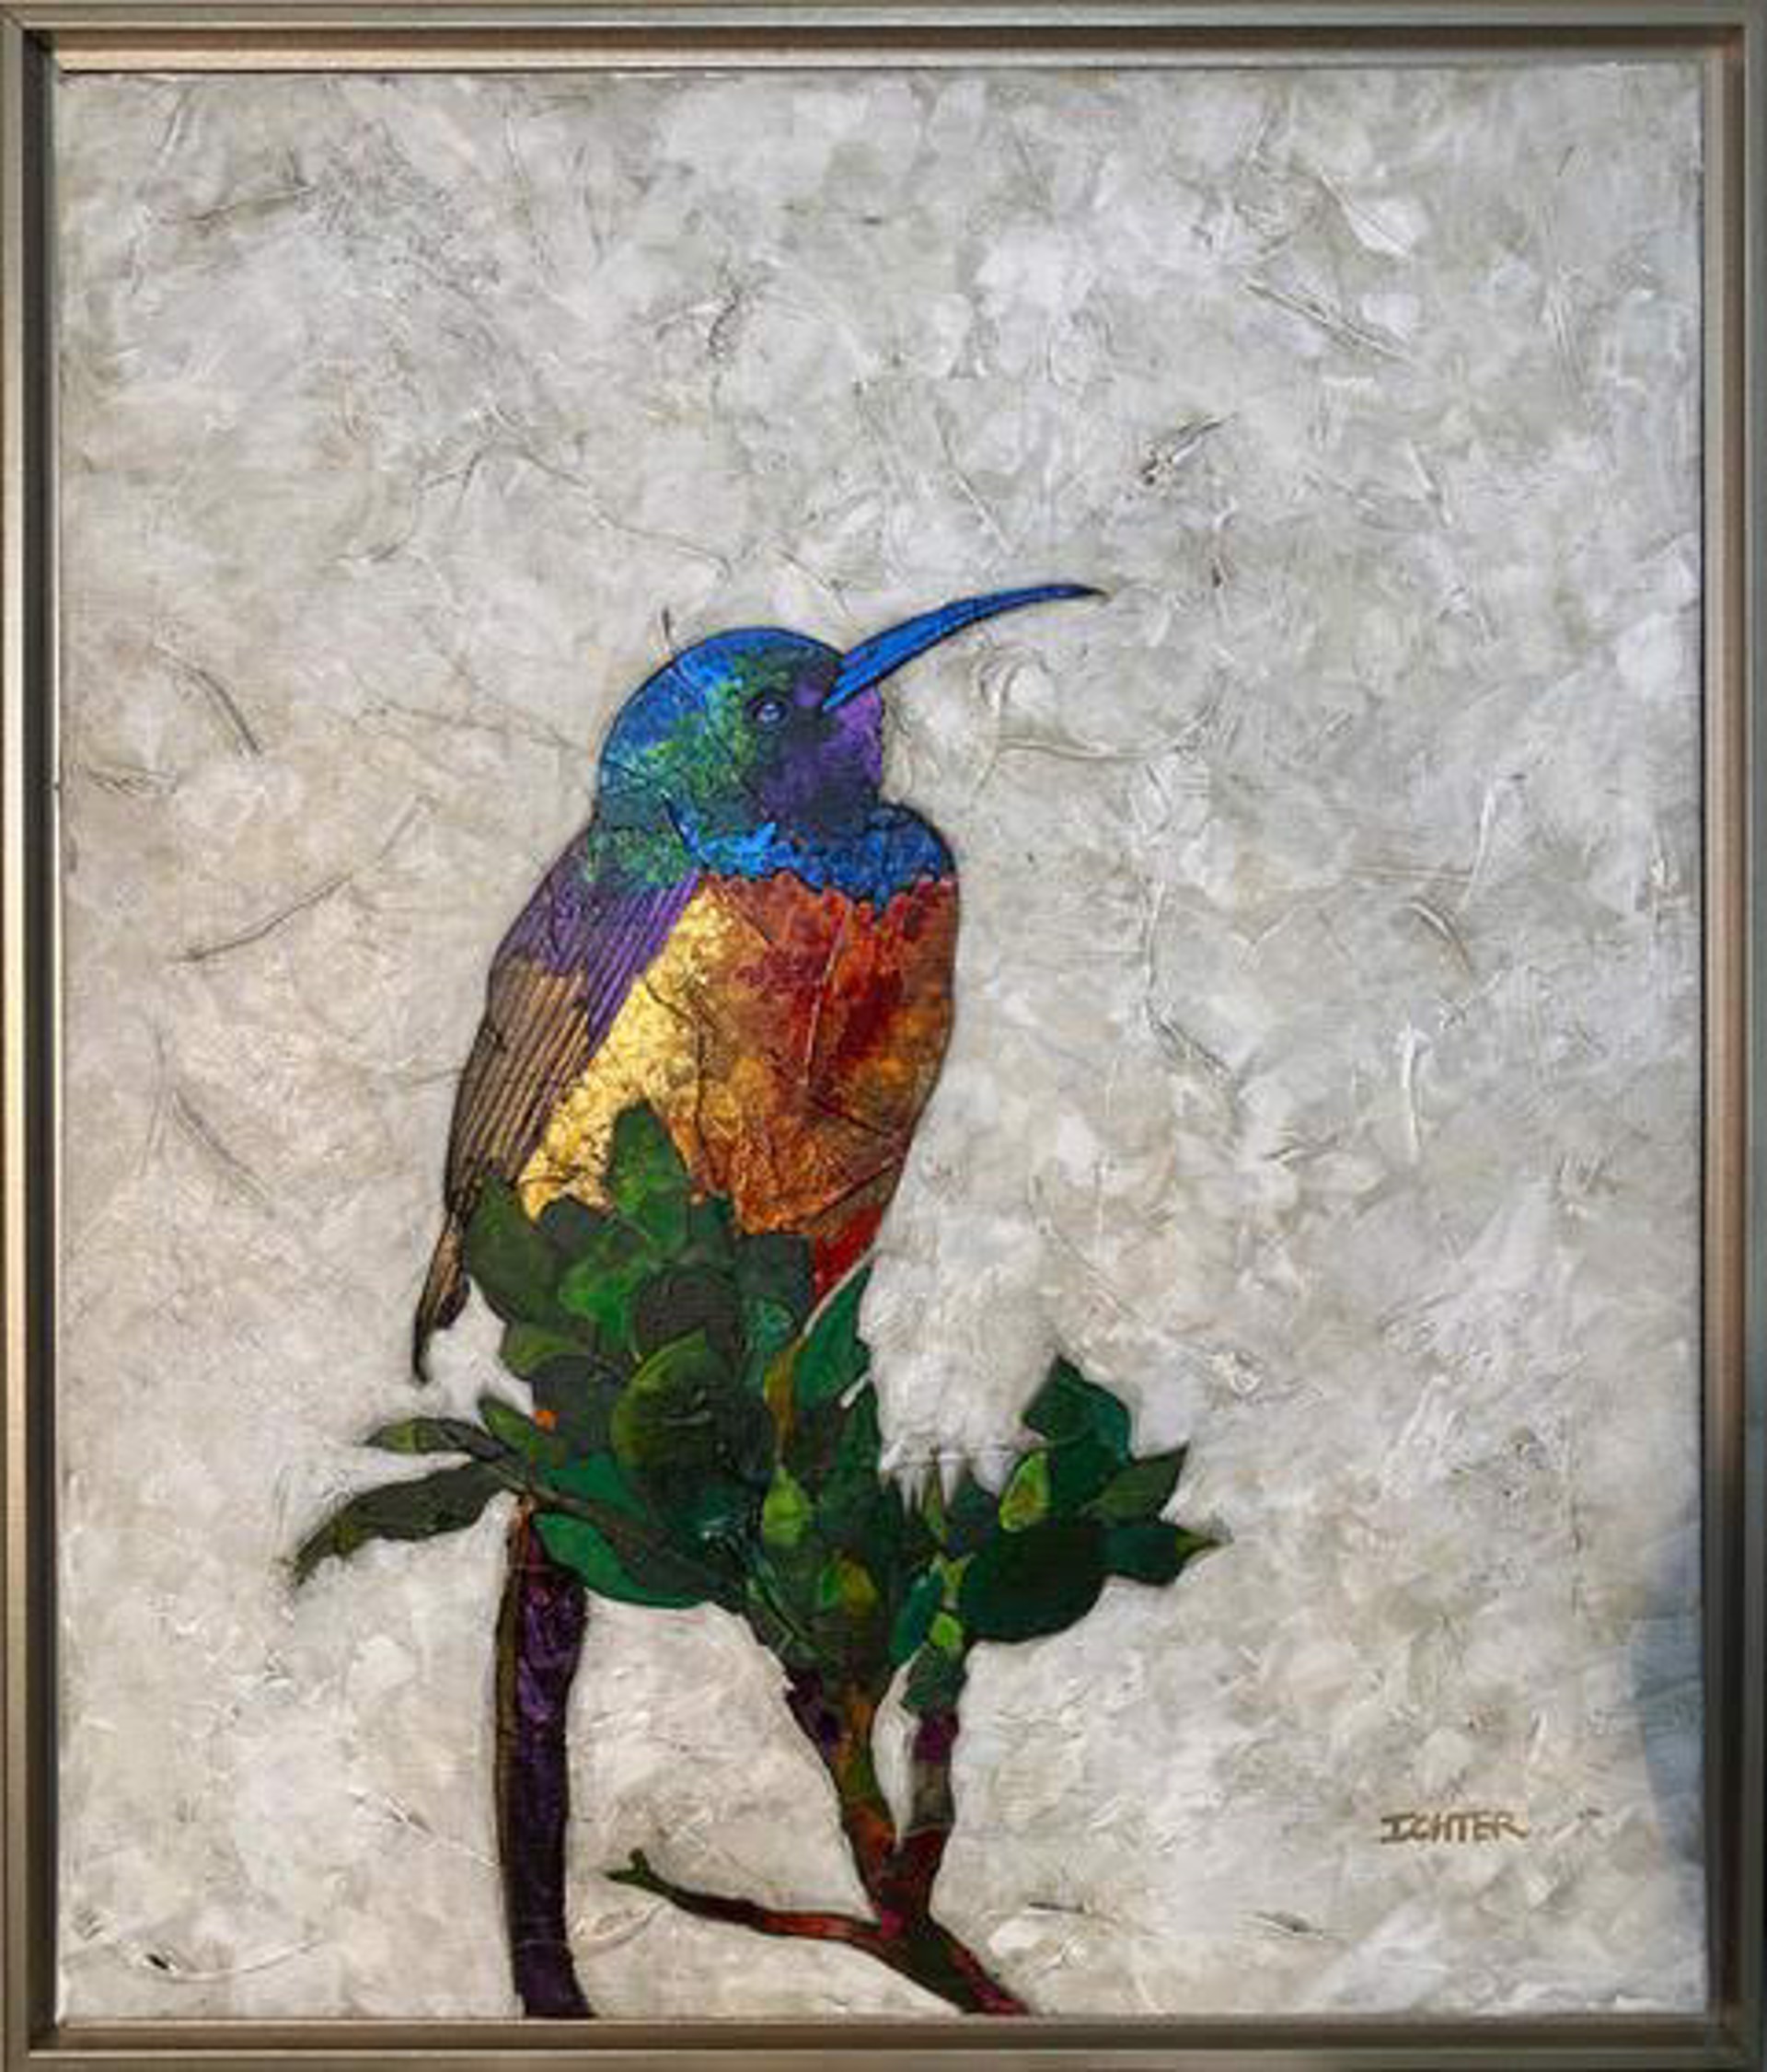 Hummingbird by R. John Ichter